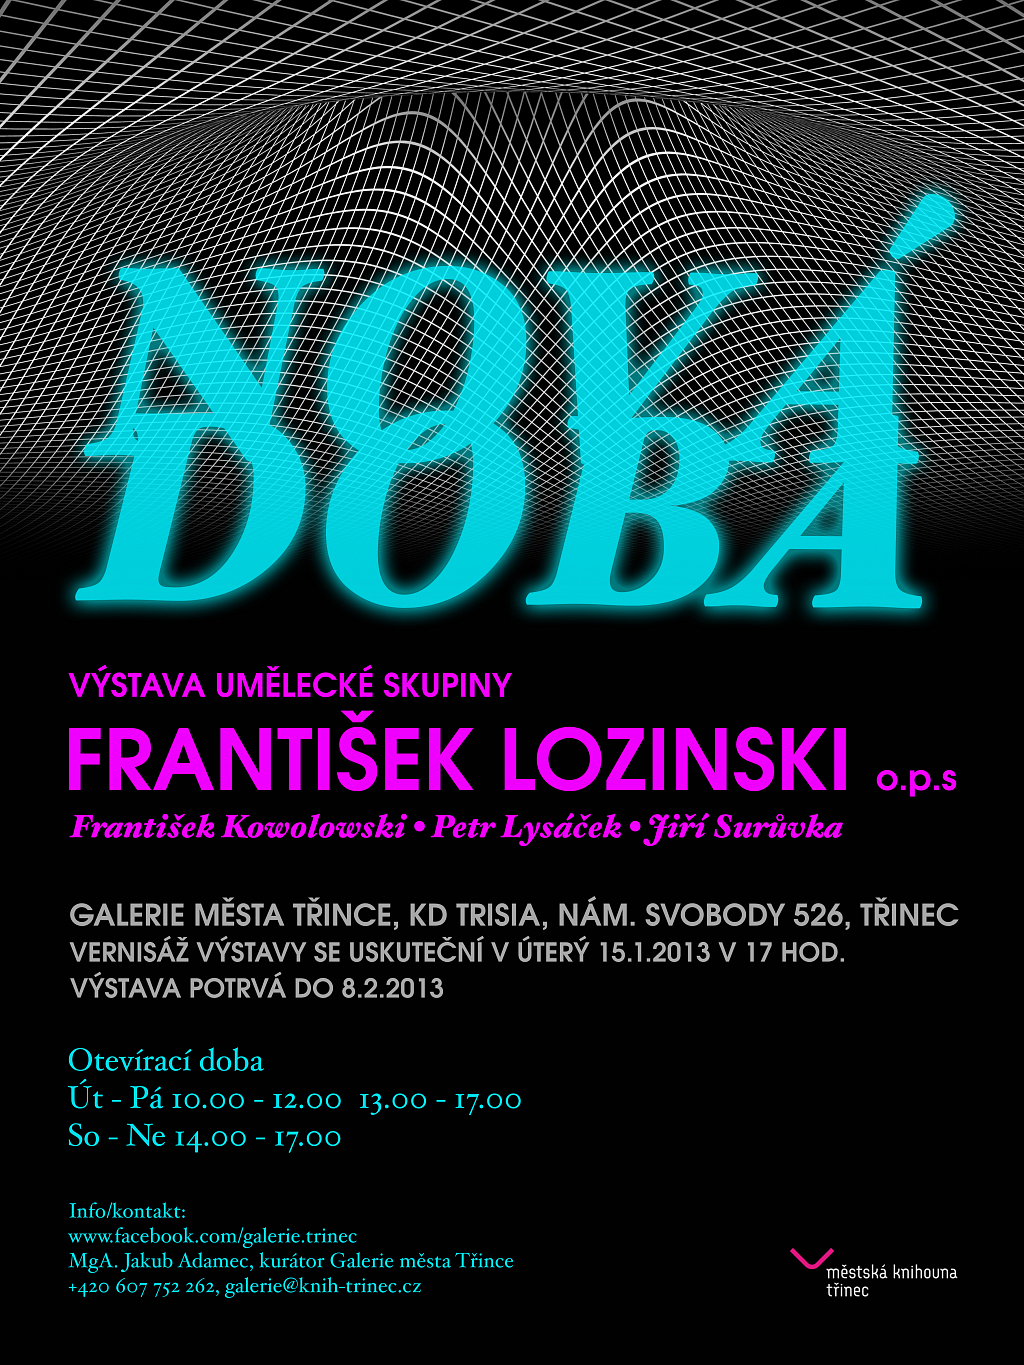 František Lozinski o.p.s.: NOVÁ DOBA